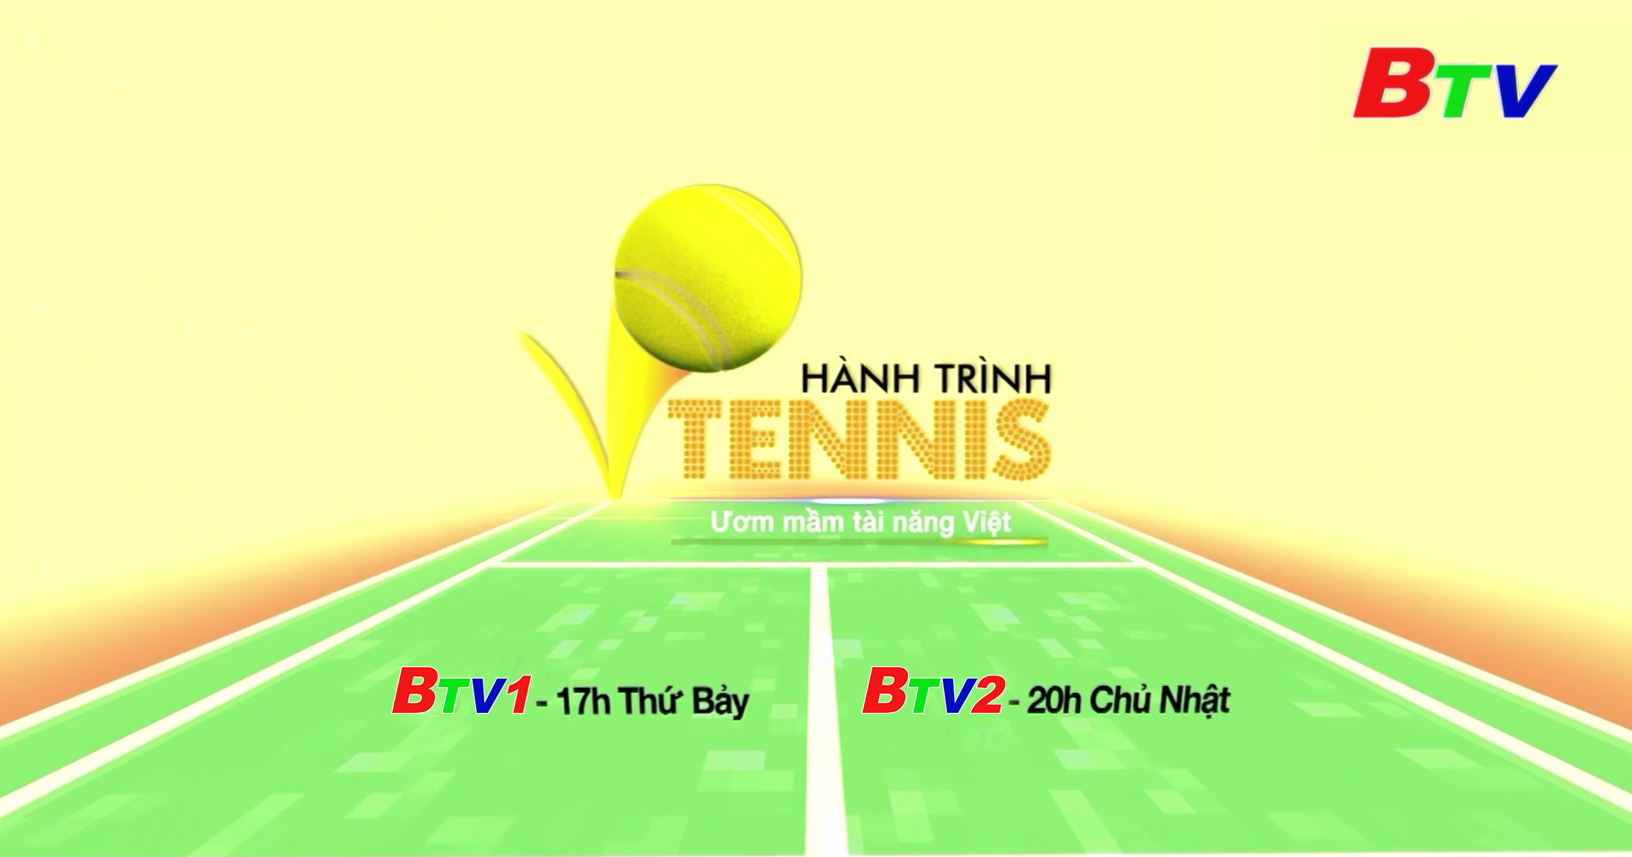 Hành trình Tennis - Ươm mầm tài năng Việt